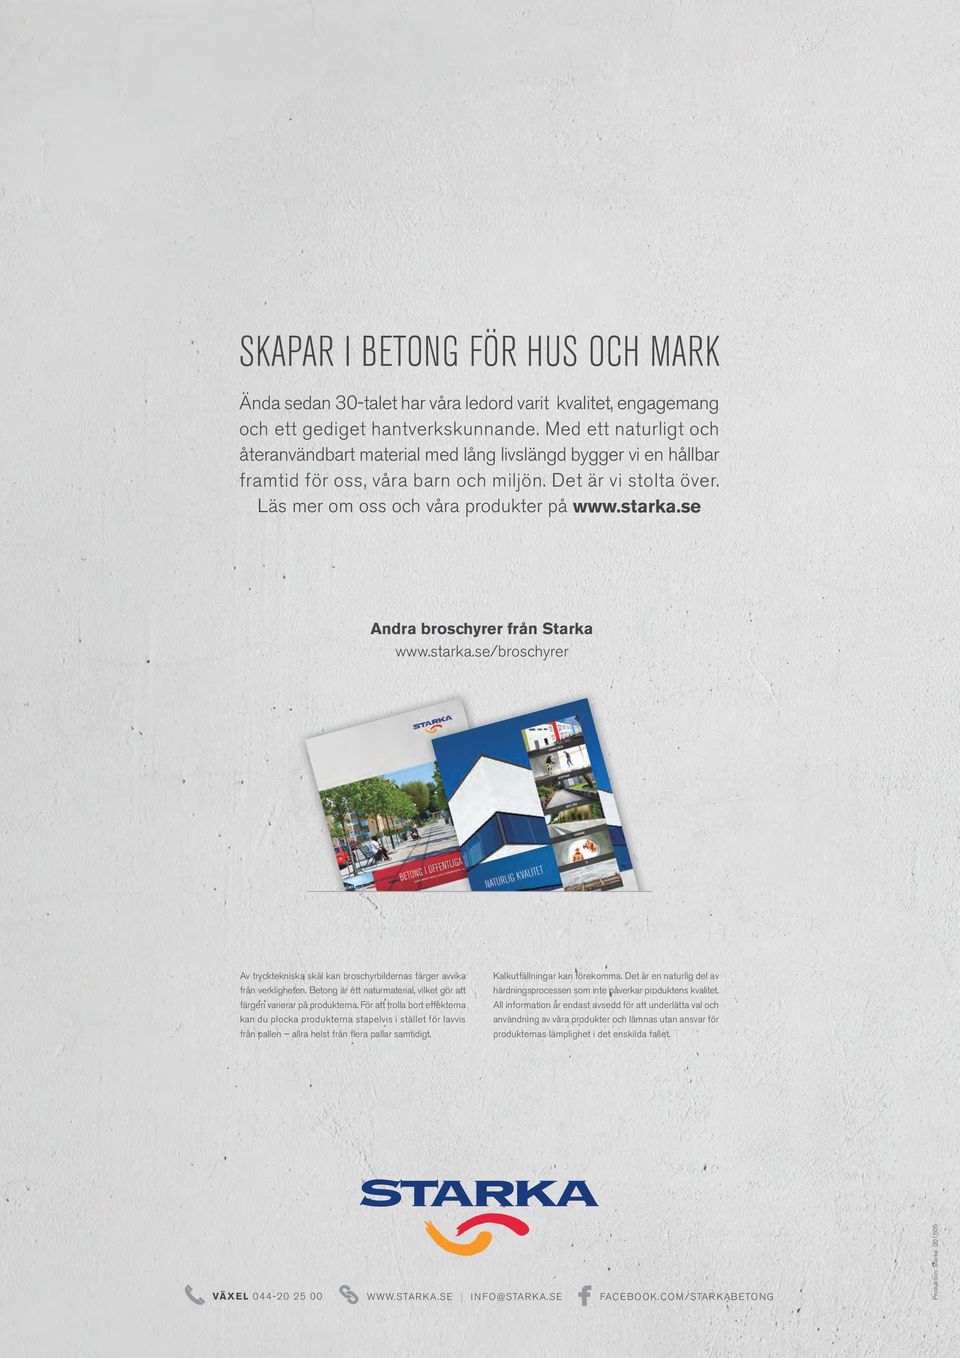 se Andra broschyrer från Starka www.starka.se/broschyrer Av trycktekniska skäl kan broschyrbildernas färger avvika från verkligheten.